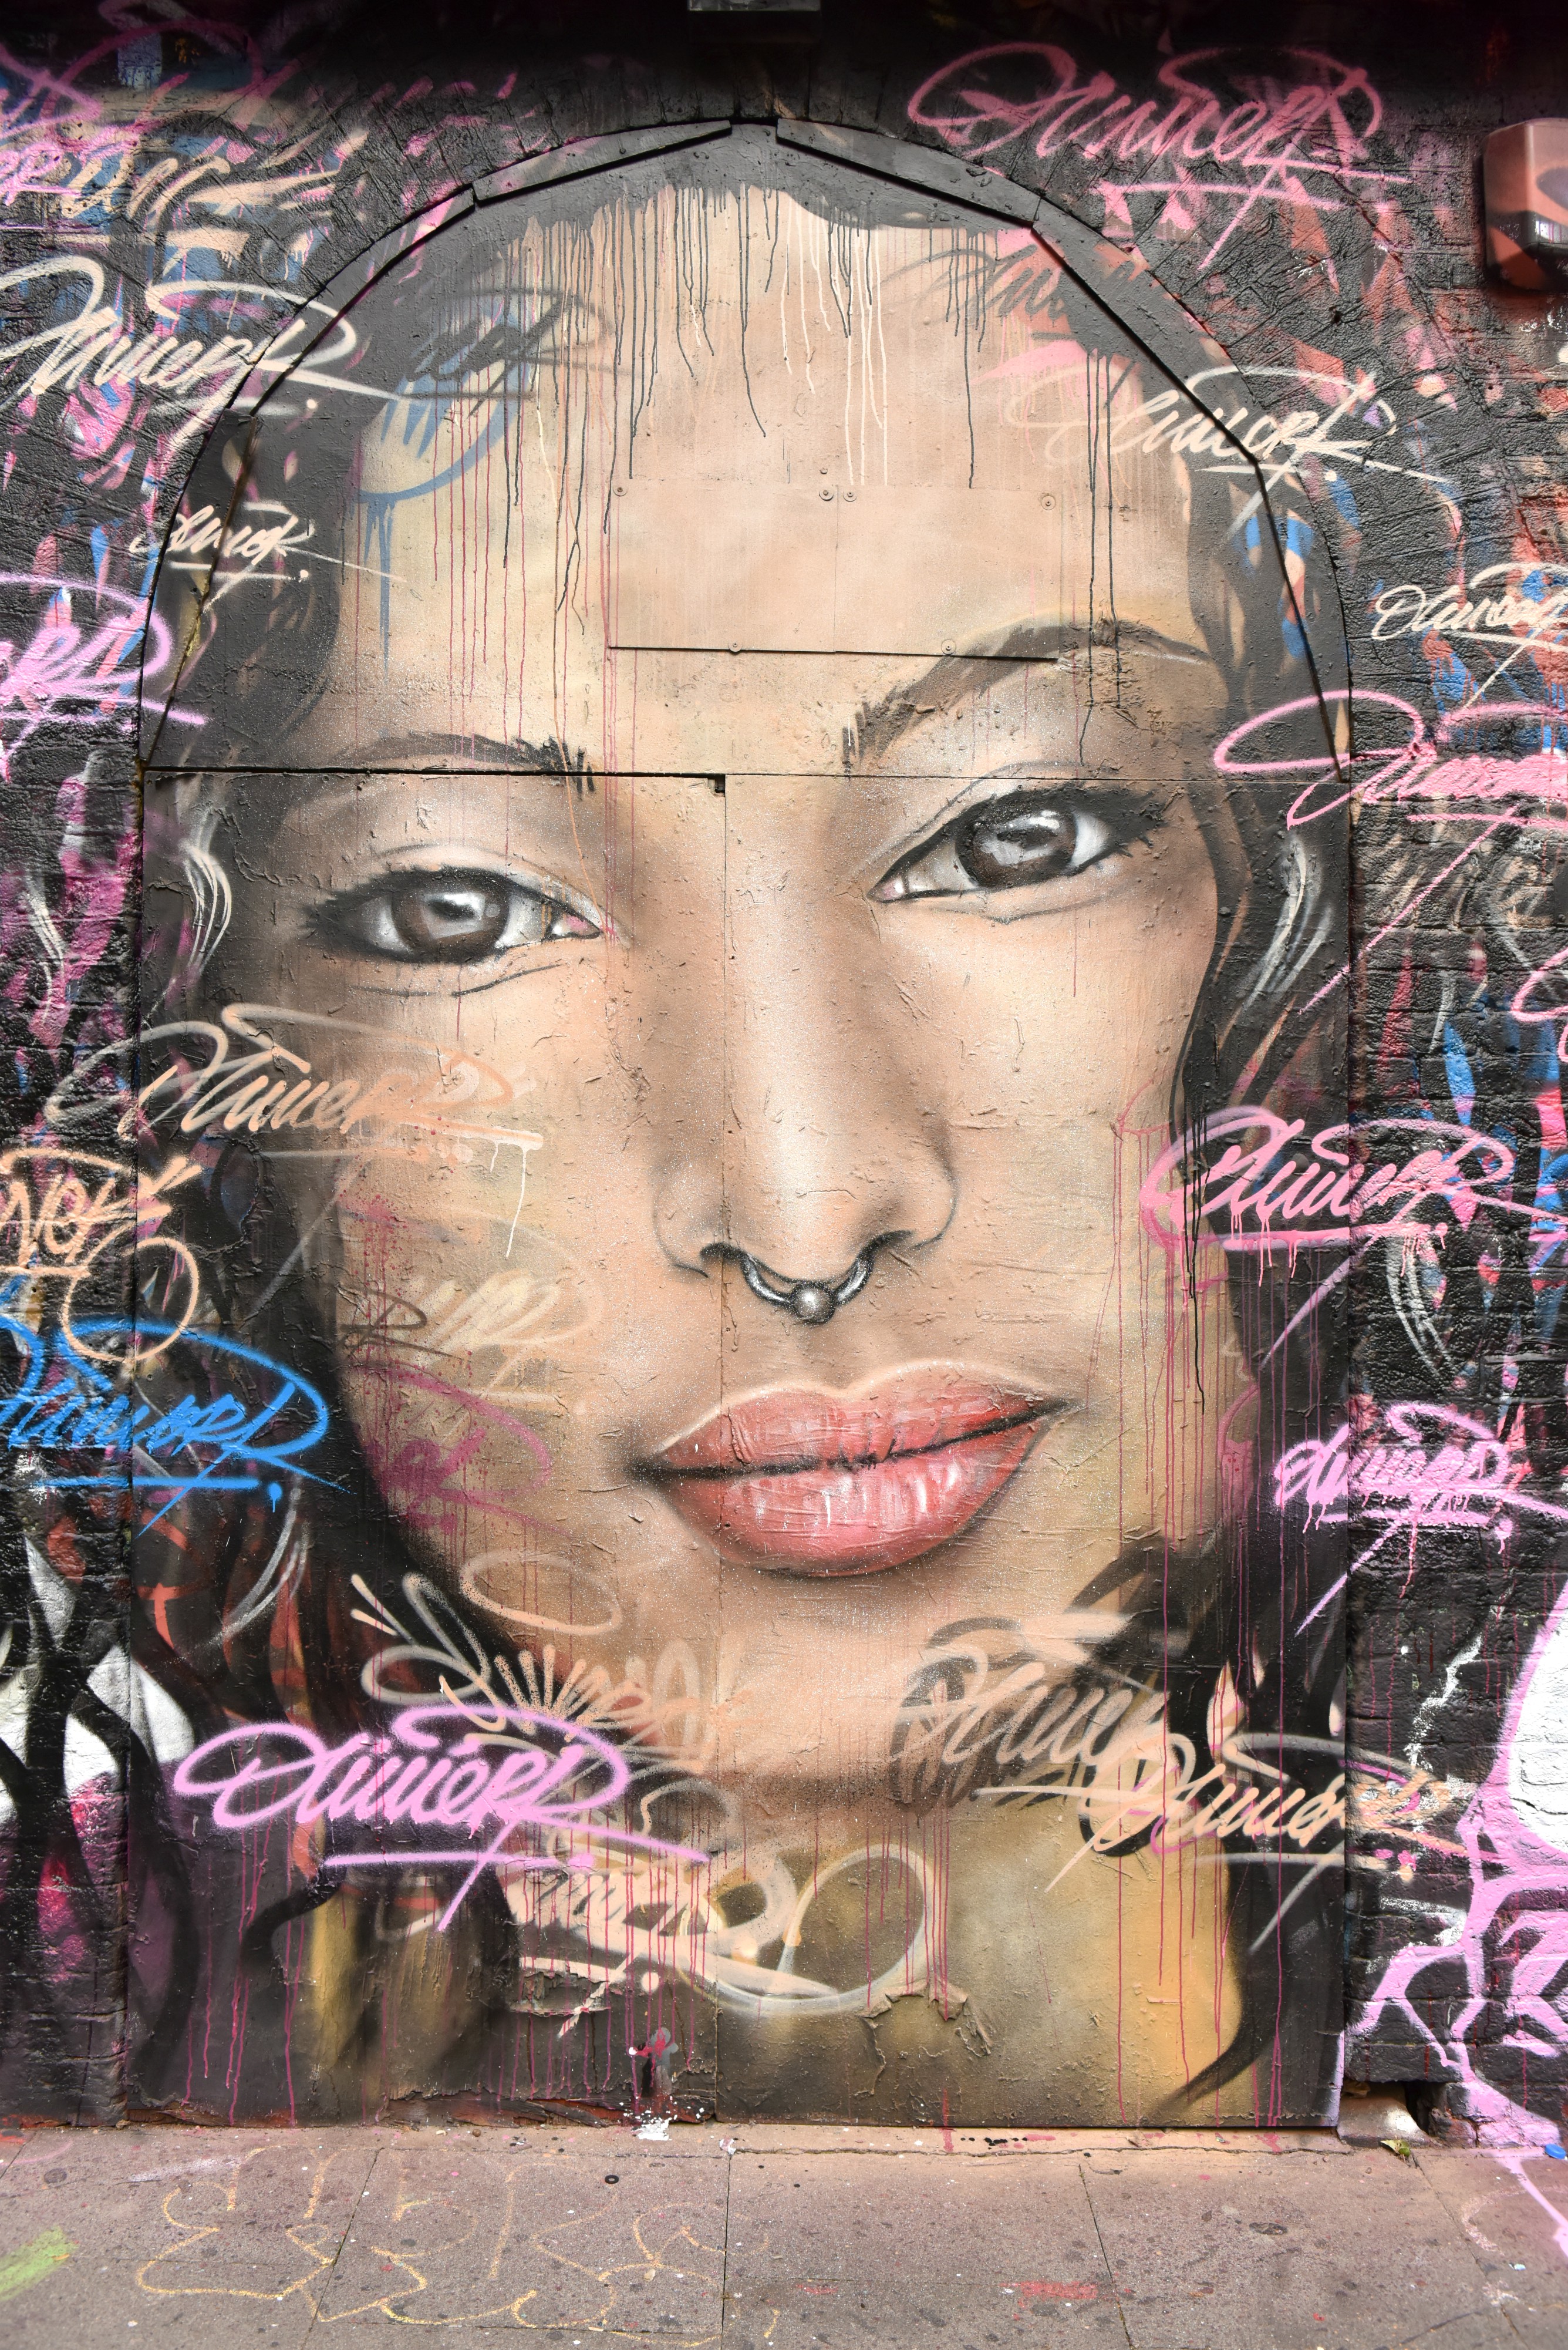 <img src="ana.jpg" alt="ana smiling women street art mural"> 